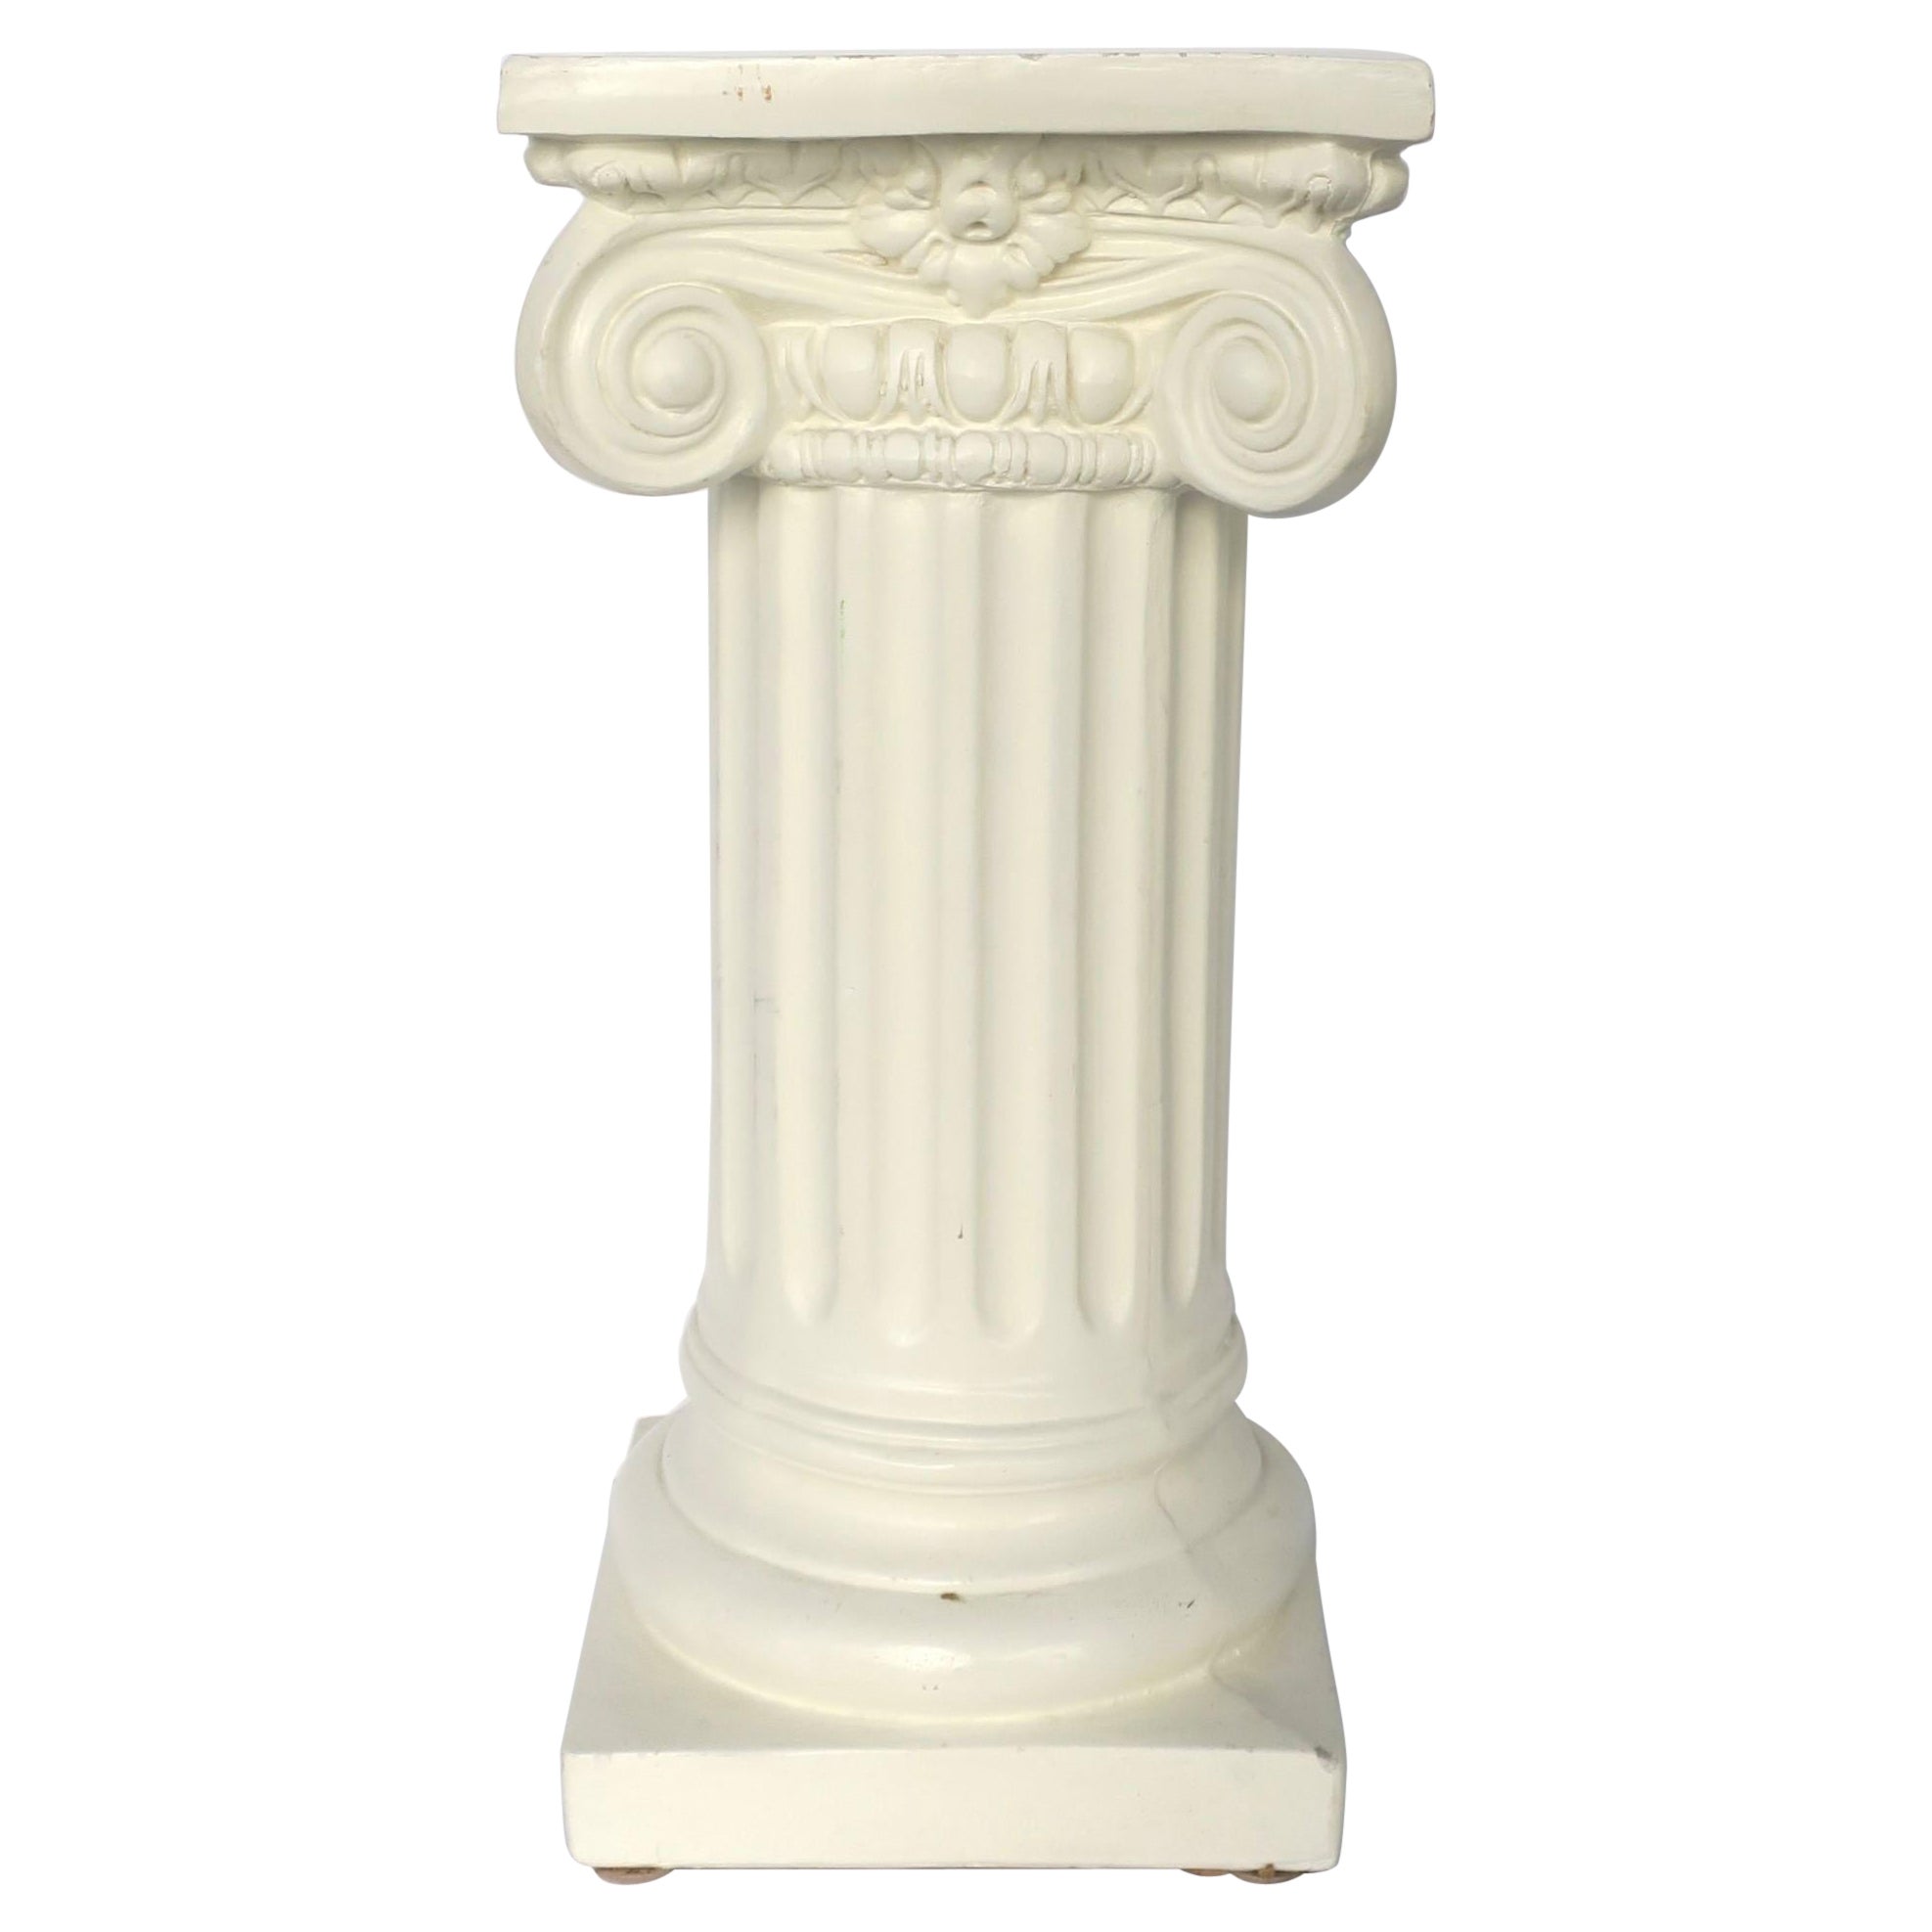 Säule The Pedestal Pillar Plaster Stand in der griechisch-ionischen neoklassischen Stil